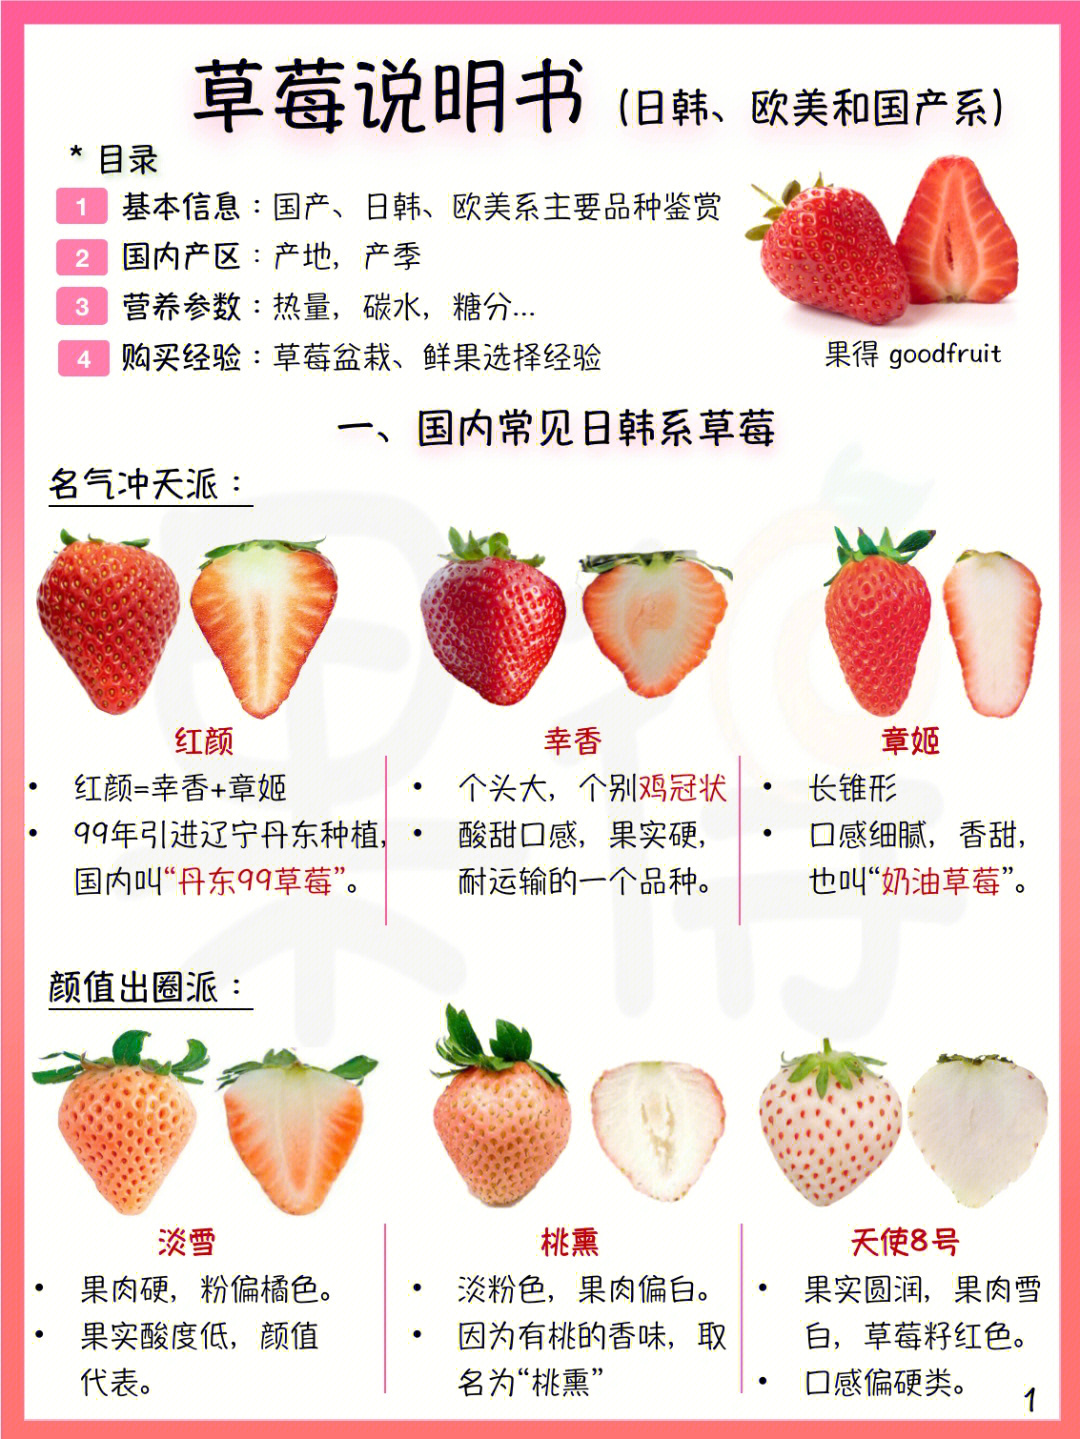 草莓品种大全名称图片